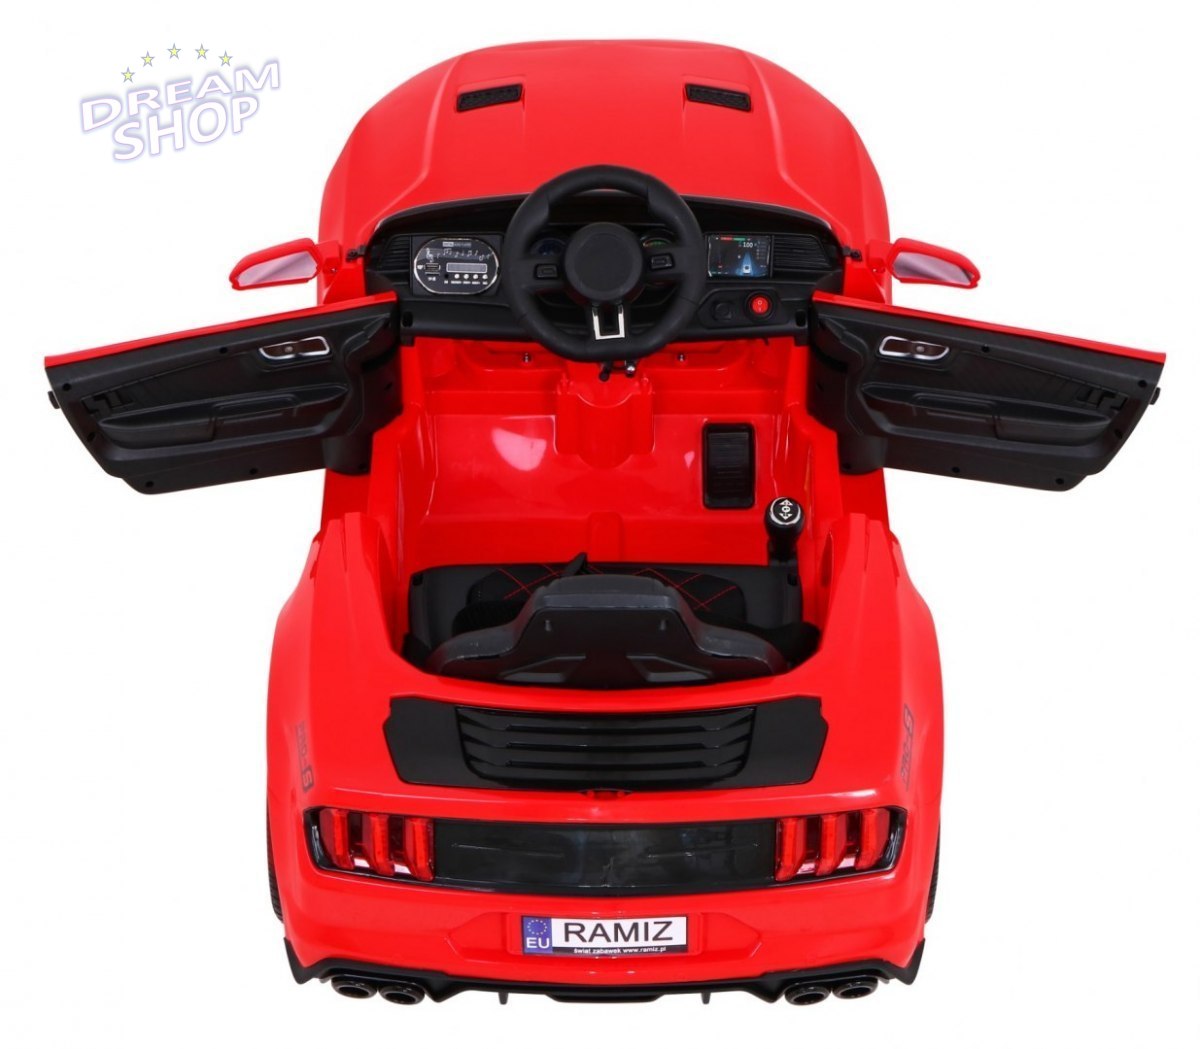 Pojazd GT Sport Czerwony